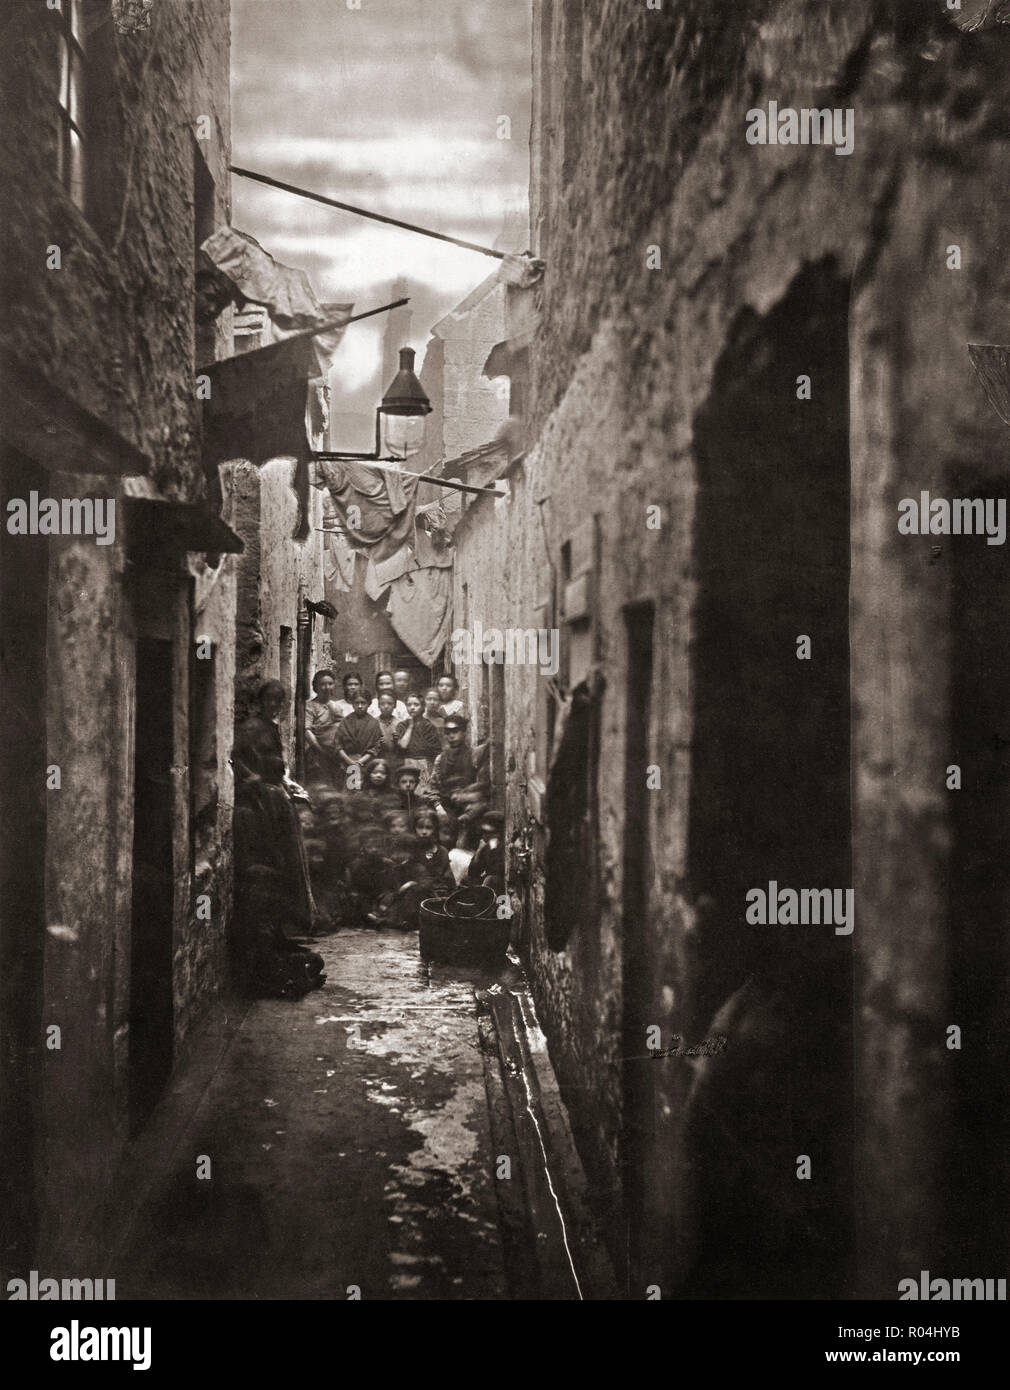 A proximité, Numéro 118 High Street, Glasgow, Écosse dans les années 1870. Photographie de l'ancienne ferme et les rues de Glasgow, par le photographe écossais Thomas Annan 1829-1887. Banque D'Images